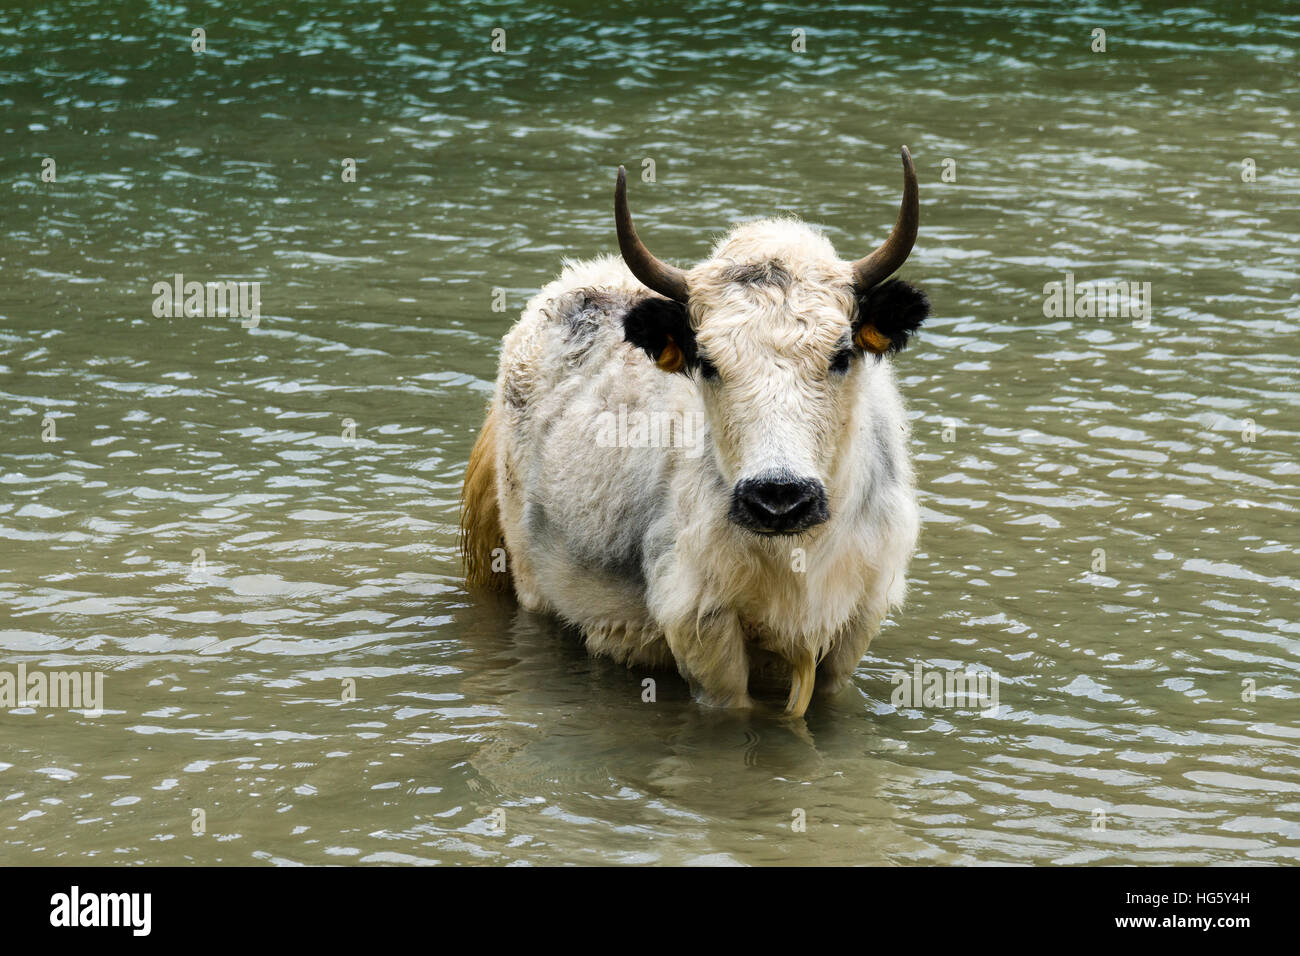 White yak (Bos mutus) standing in water, Ice Lake, Braga, Manang District, Nepal Stock Photo